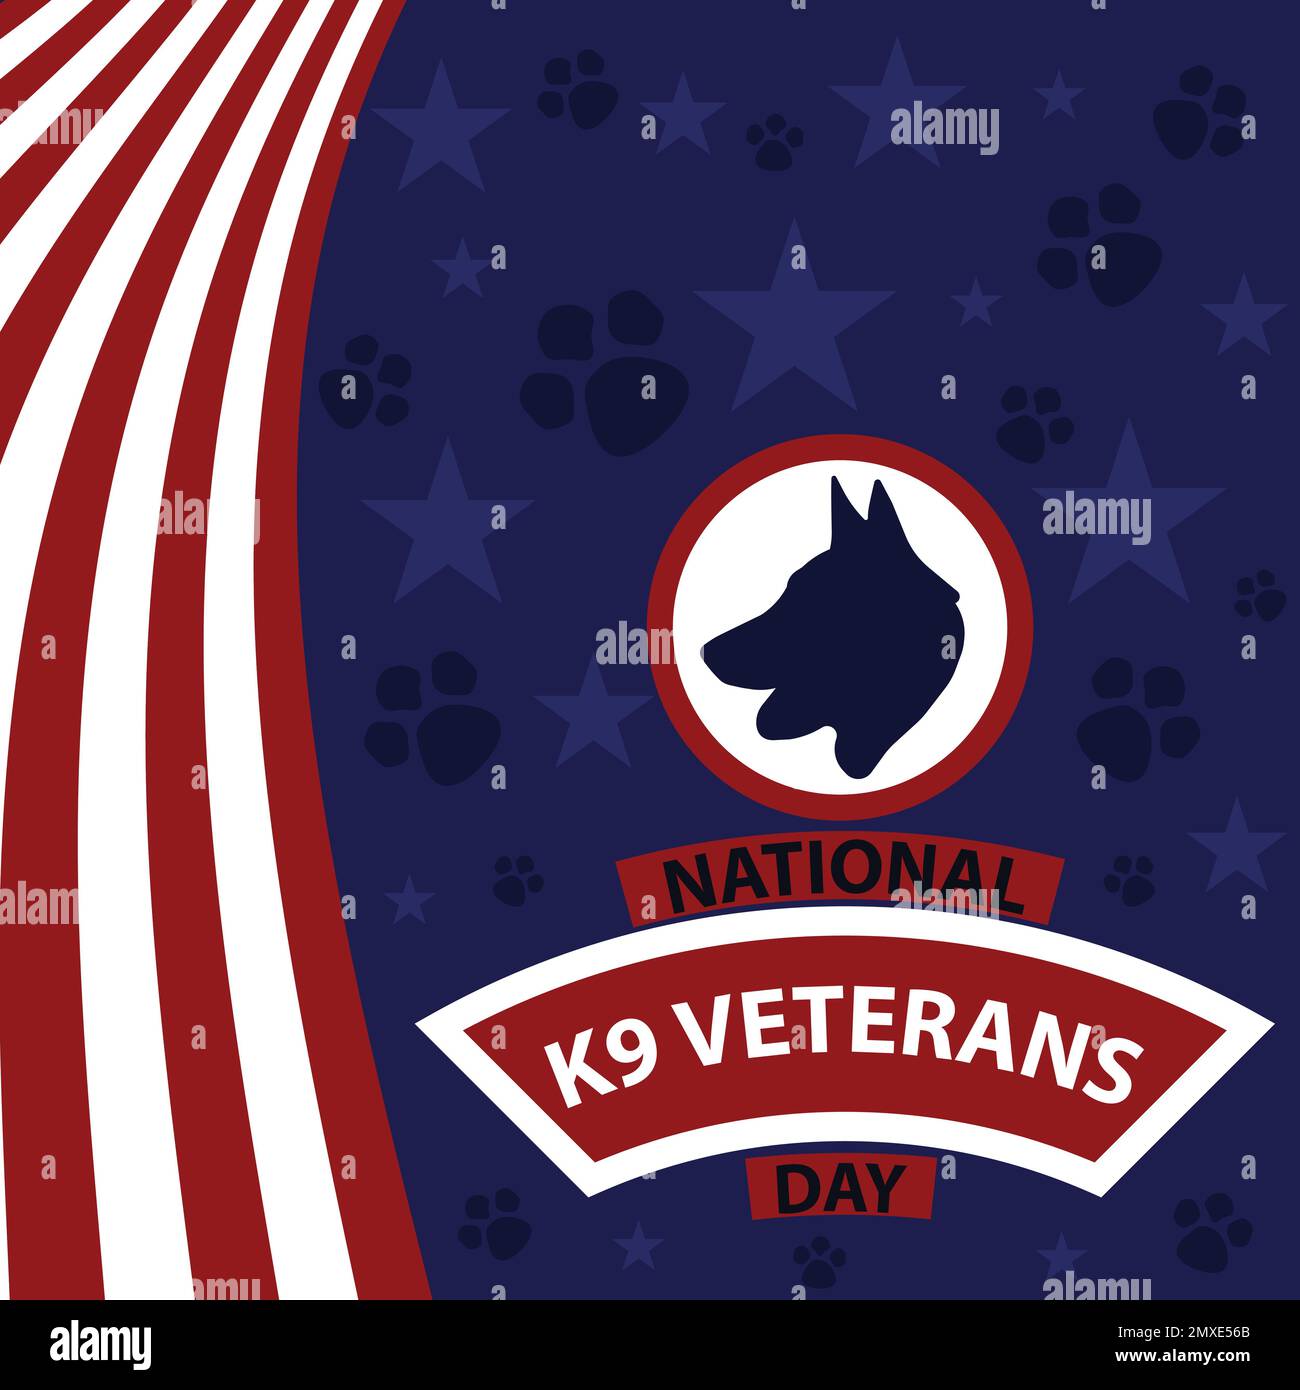 Diseño de banner vectorial celebrando el Día Nacional de los Veteranos K9 en marzo. Fondo nacional del día de los veteranos K9 con colores y símbolos del tema de la bandera americana. Ilustración del Vector